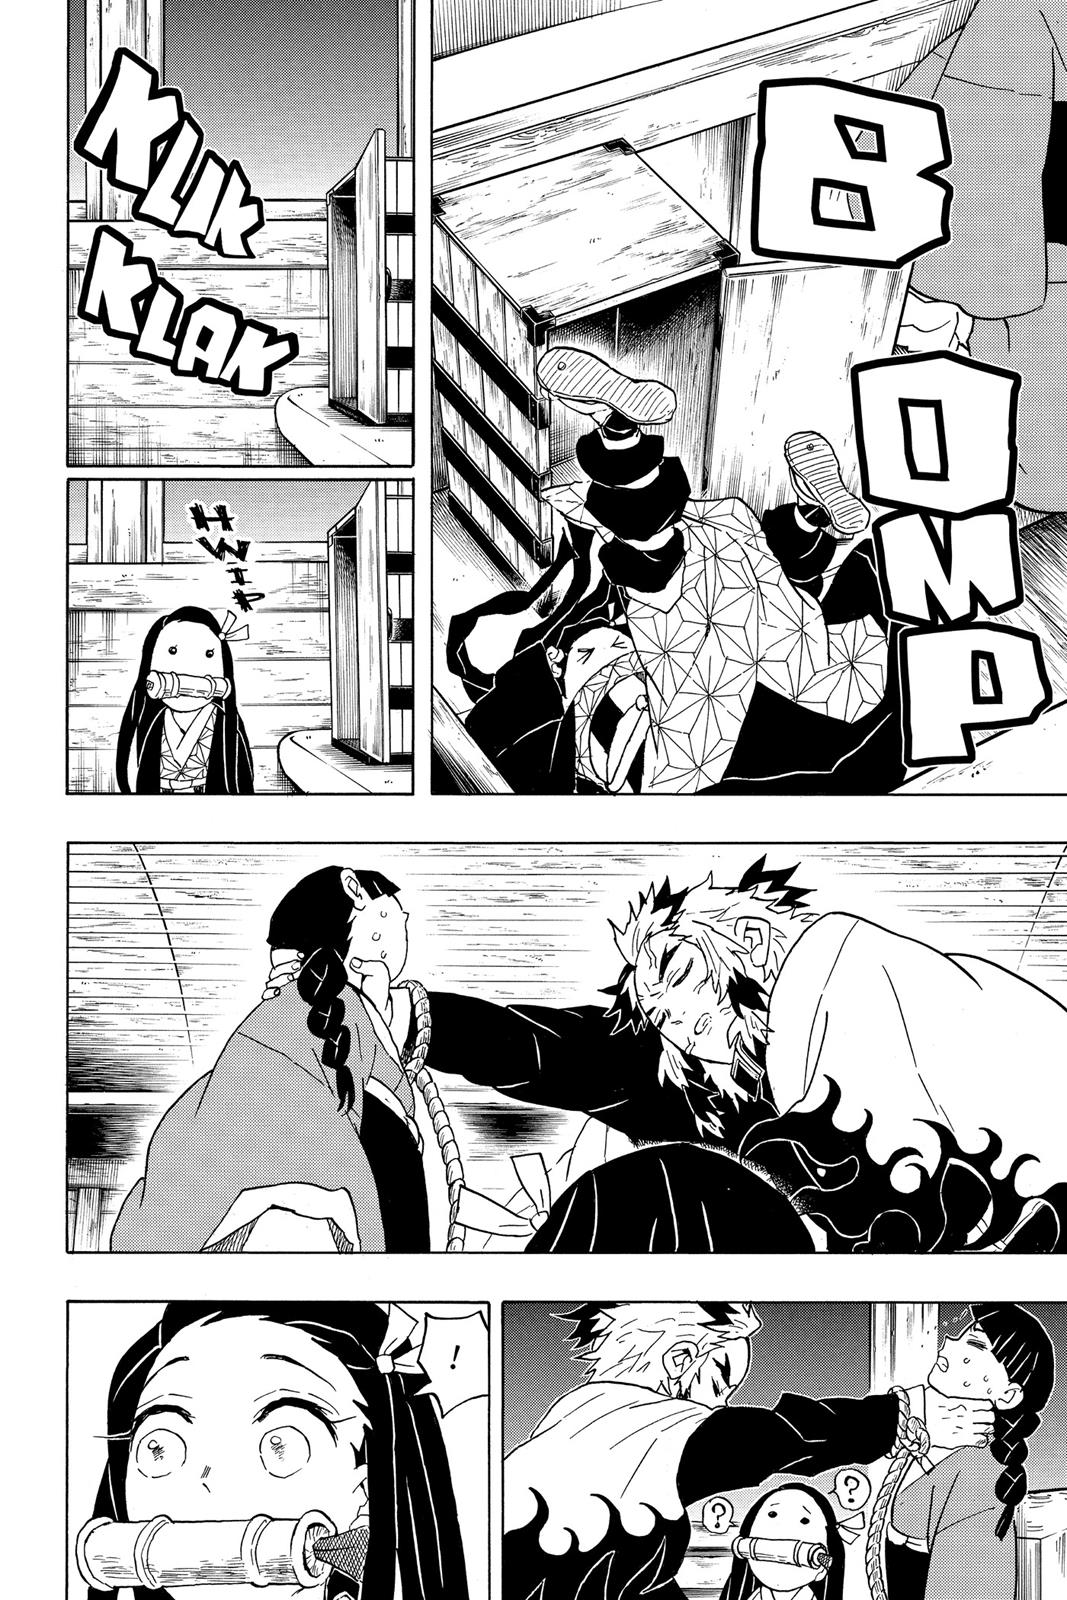 Demon Slayer Manga Manga Chapter - 56 - image 11